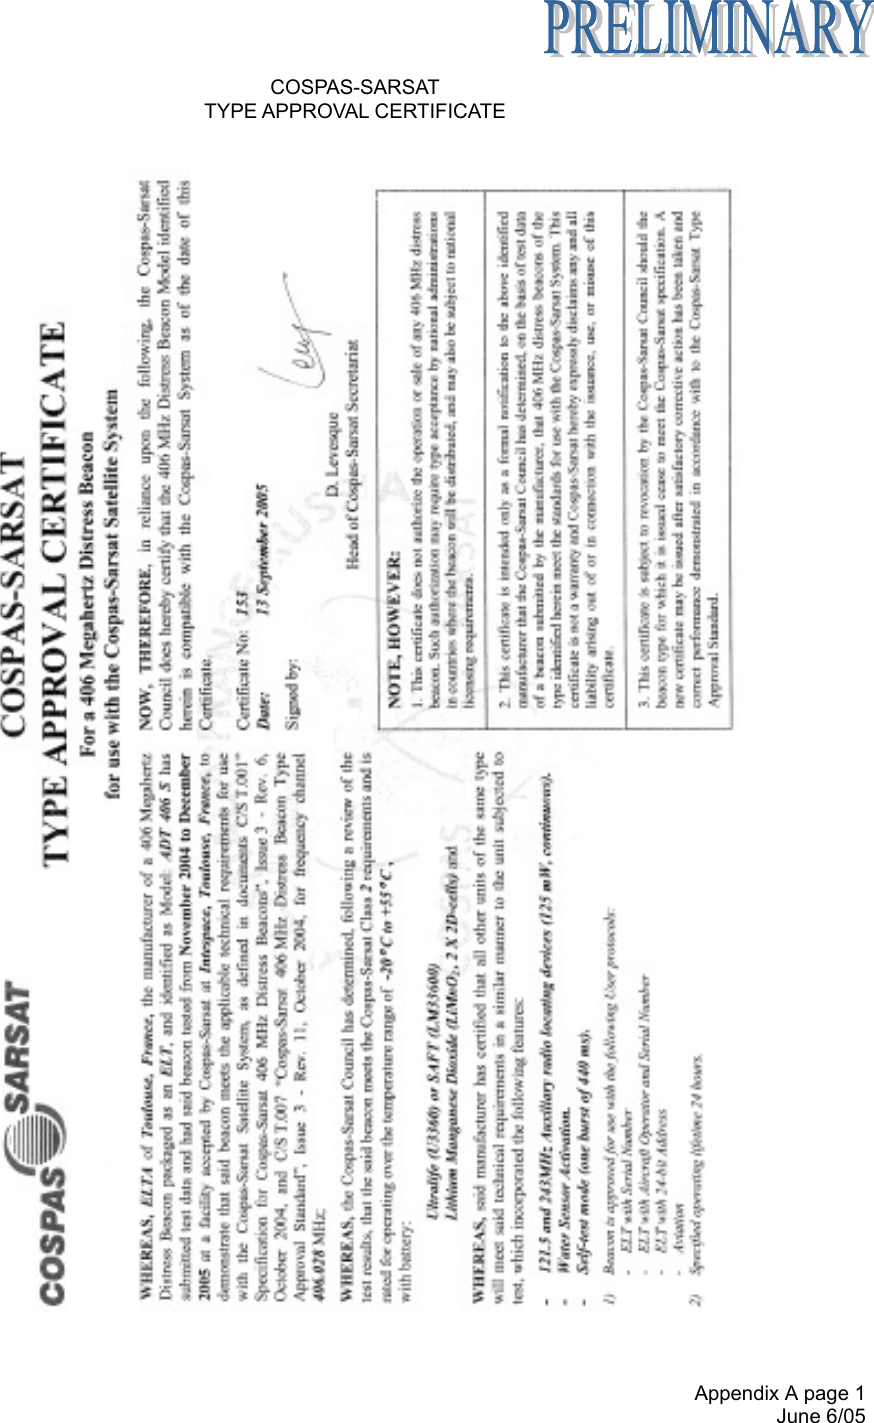  Appendix A page 1 June 6/05 COSPAS-SARSAT TYPE APPROVAL CERTIFICATE     